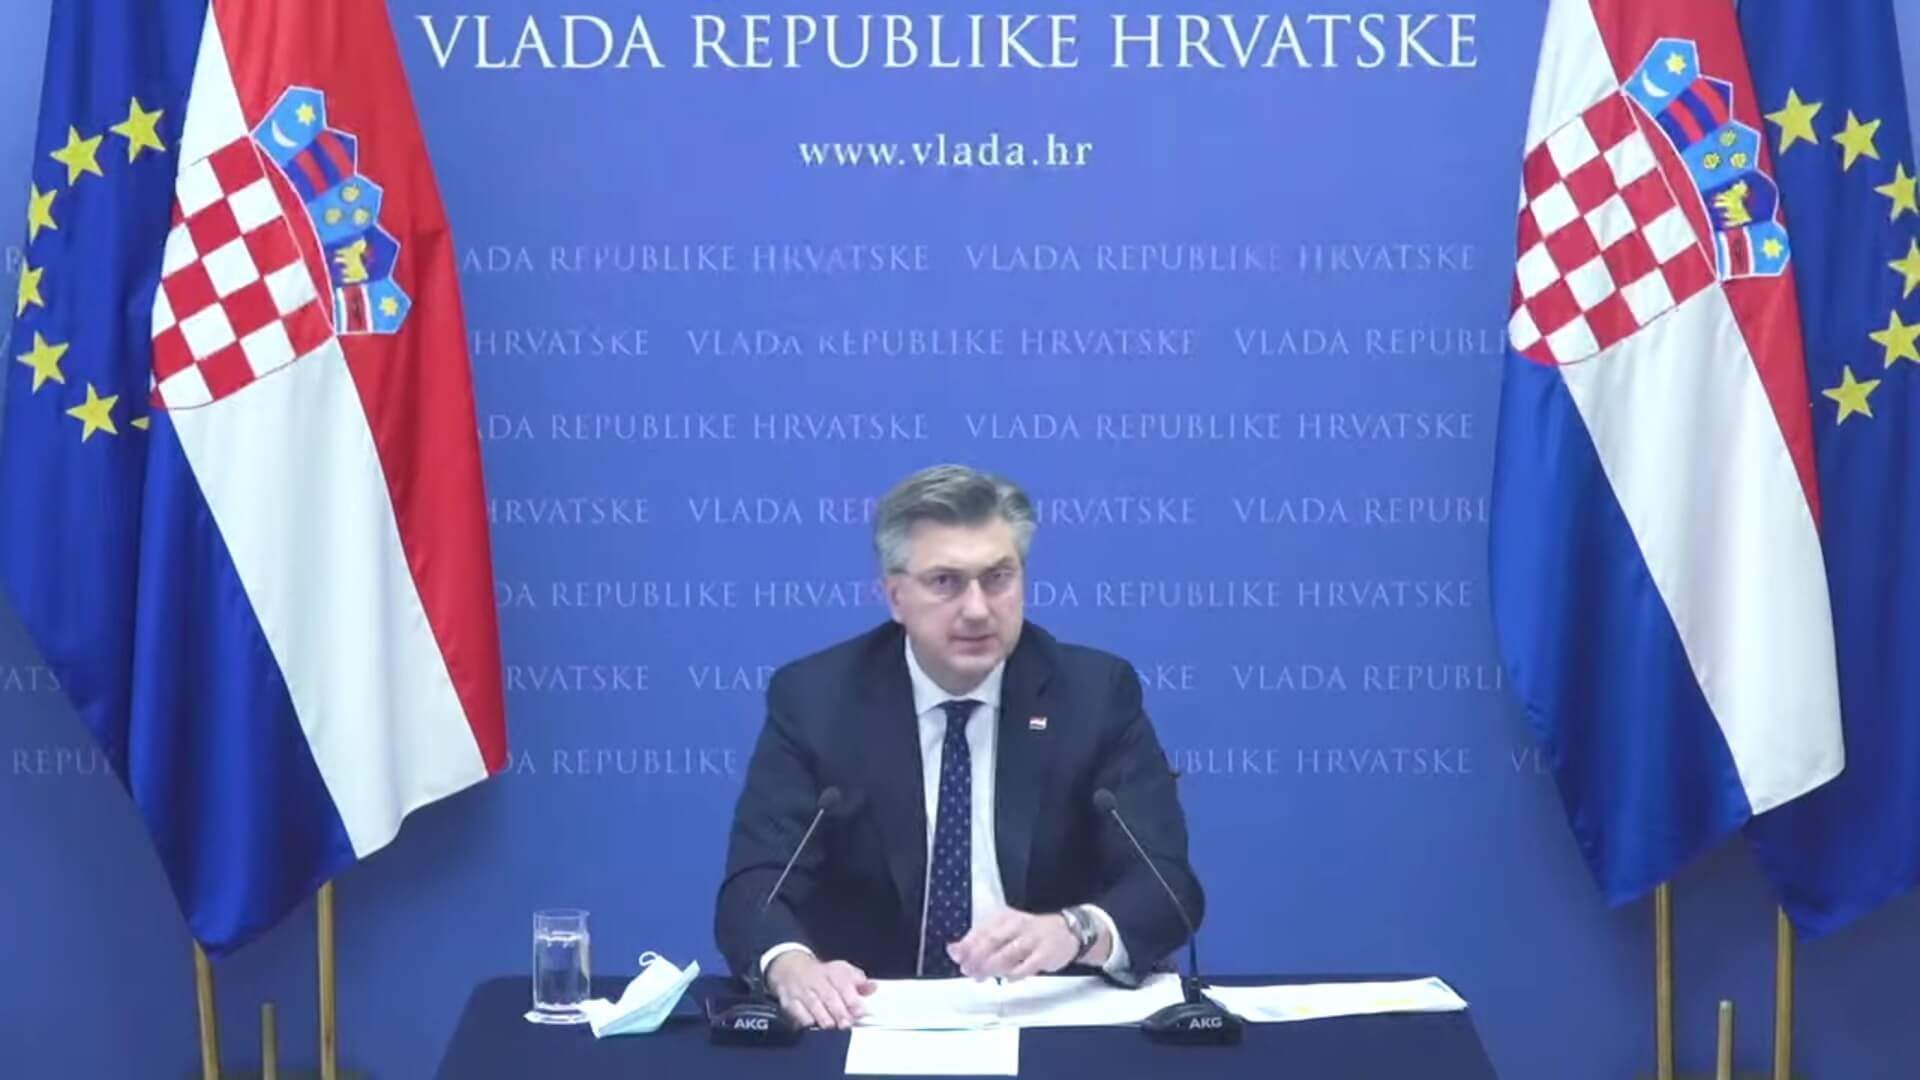 screenshot / Vlada Republike Hrvatske